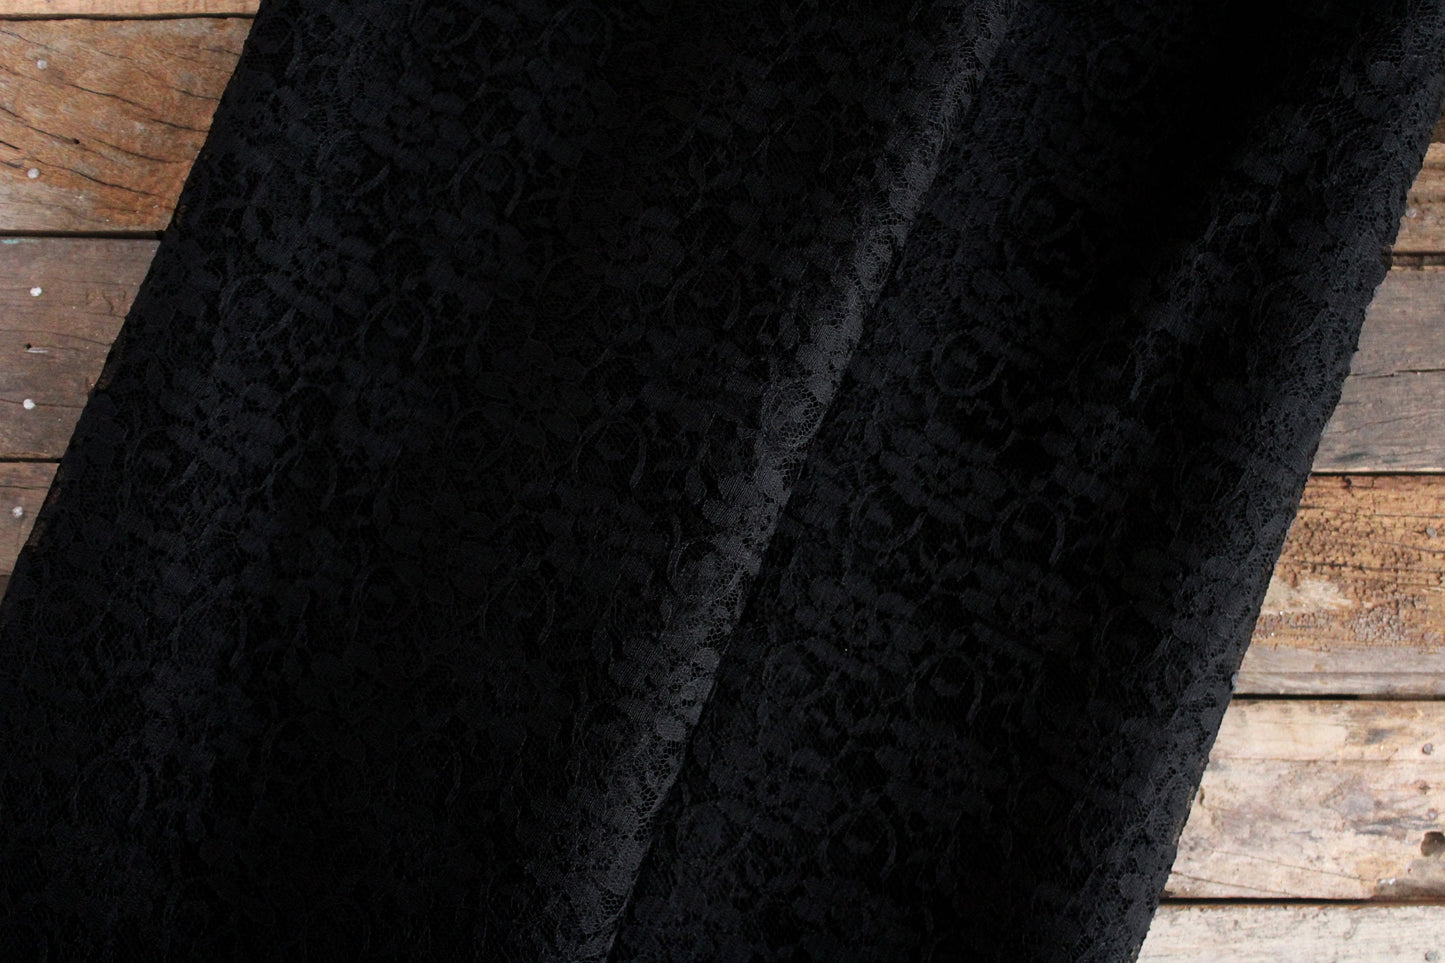 Black Floral Net Lace Fabric